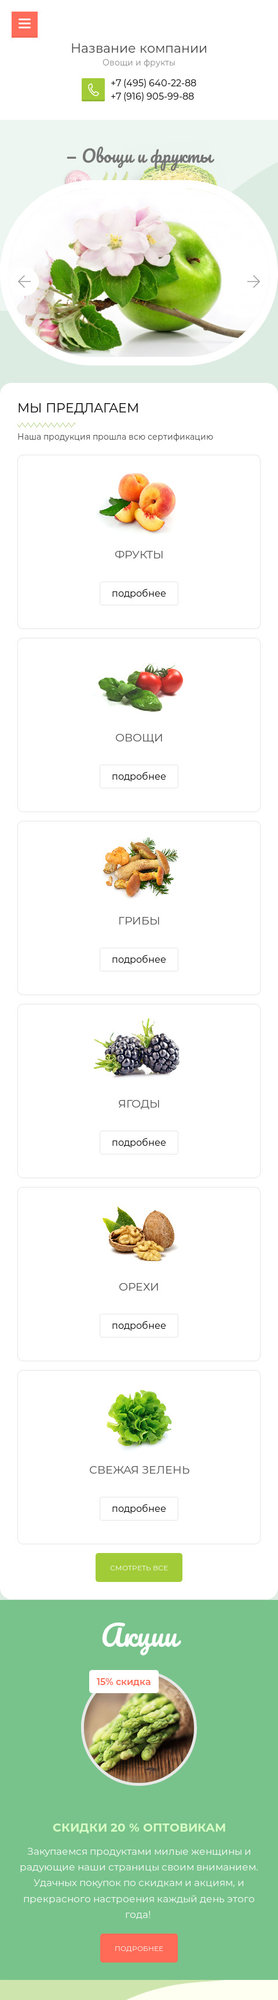 Готовый Сайт-Бизнес № 2031774 - Овощи, фрукты, орехи, грибы, ягоды (Мобильная версия)